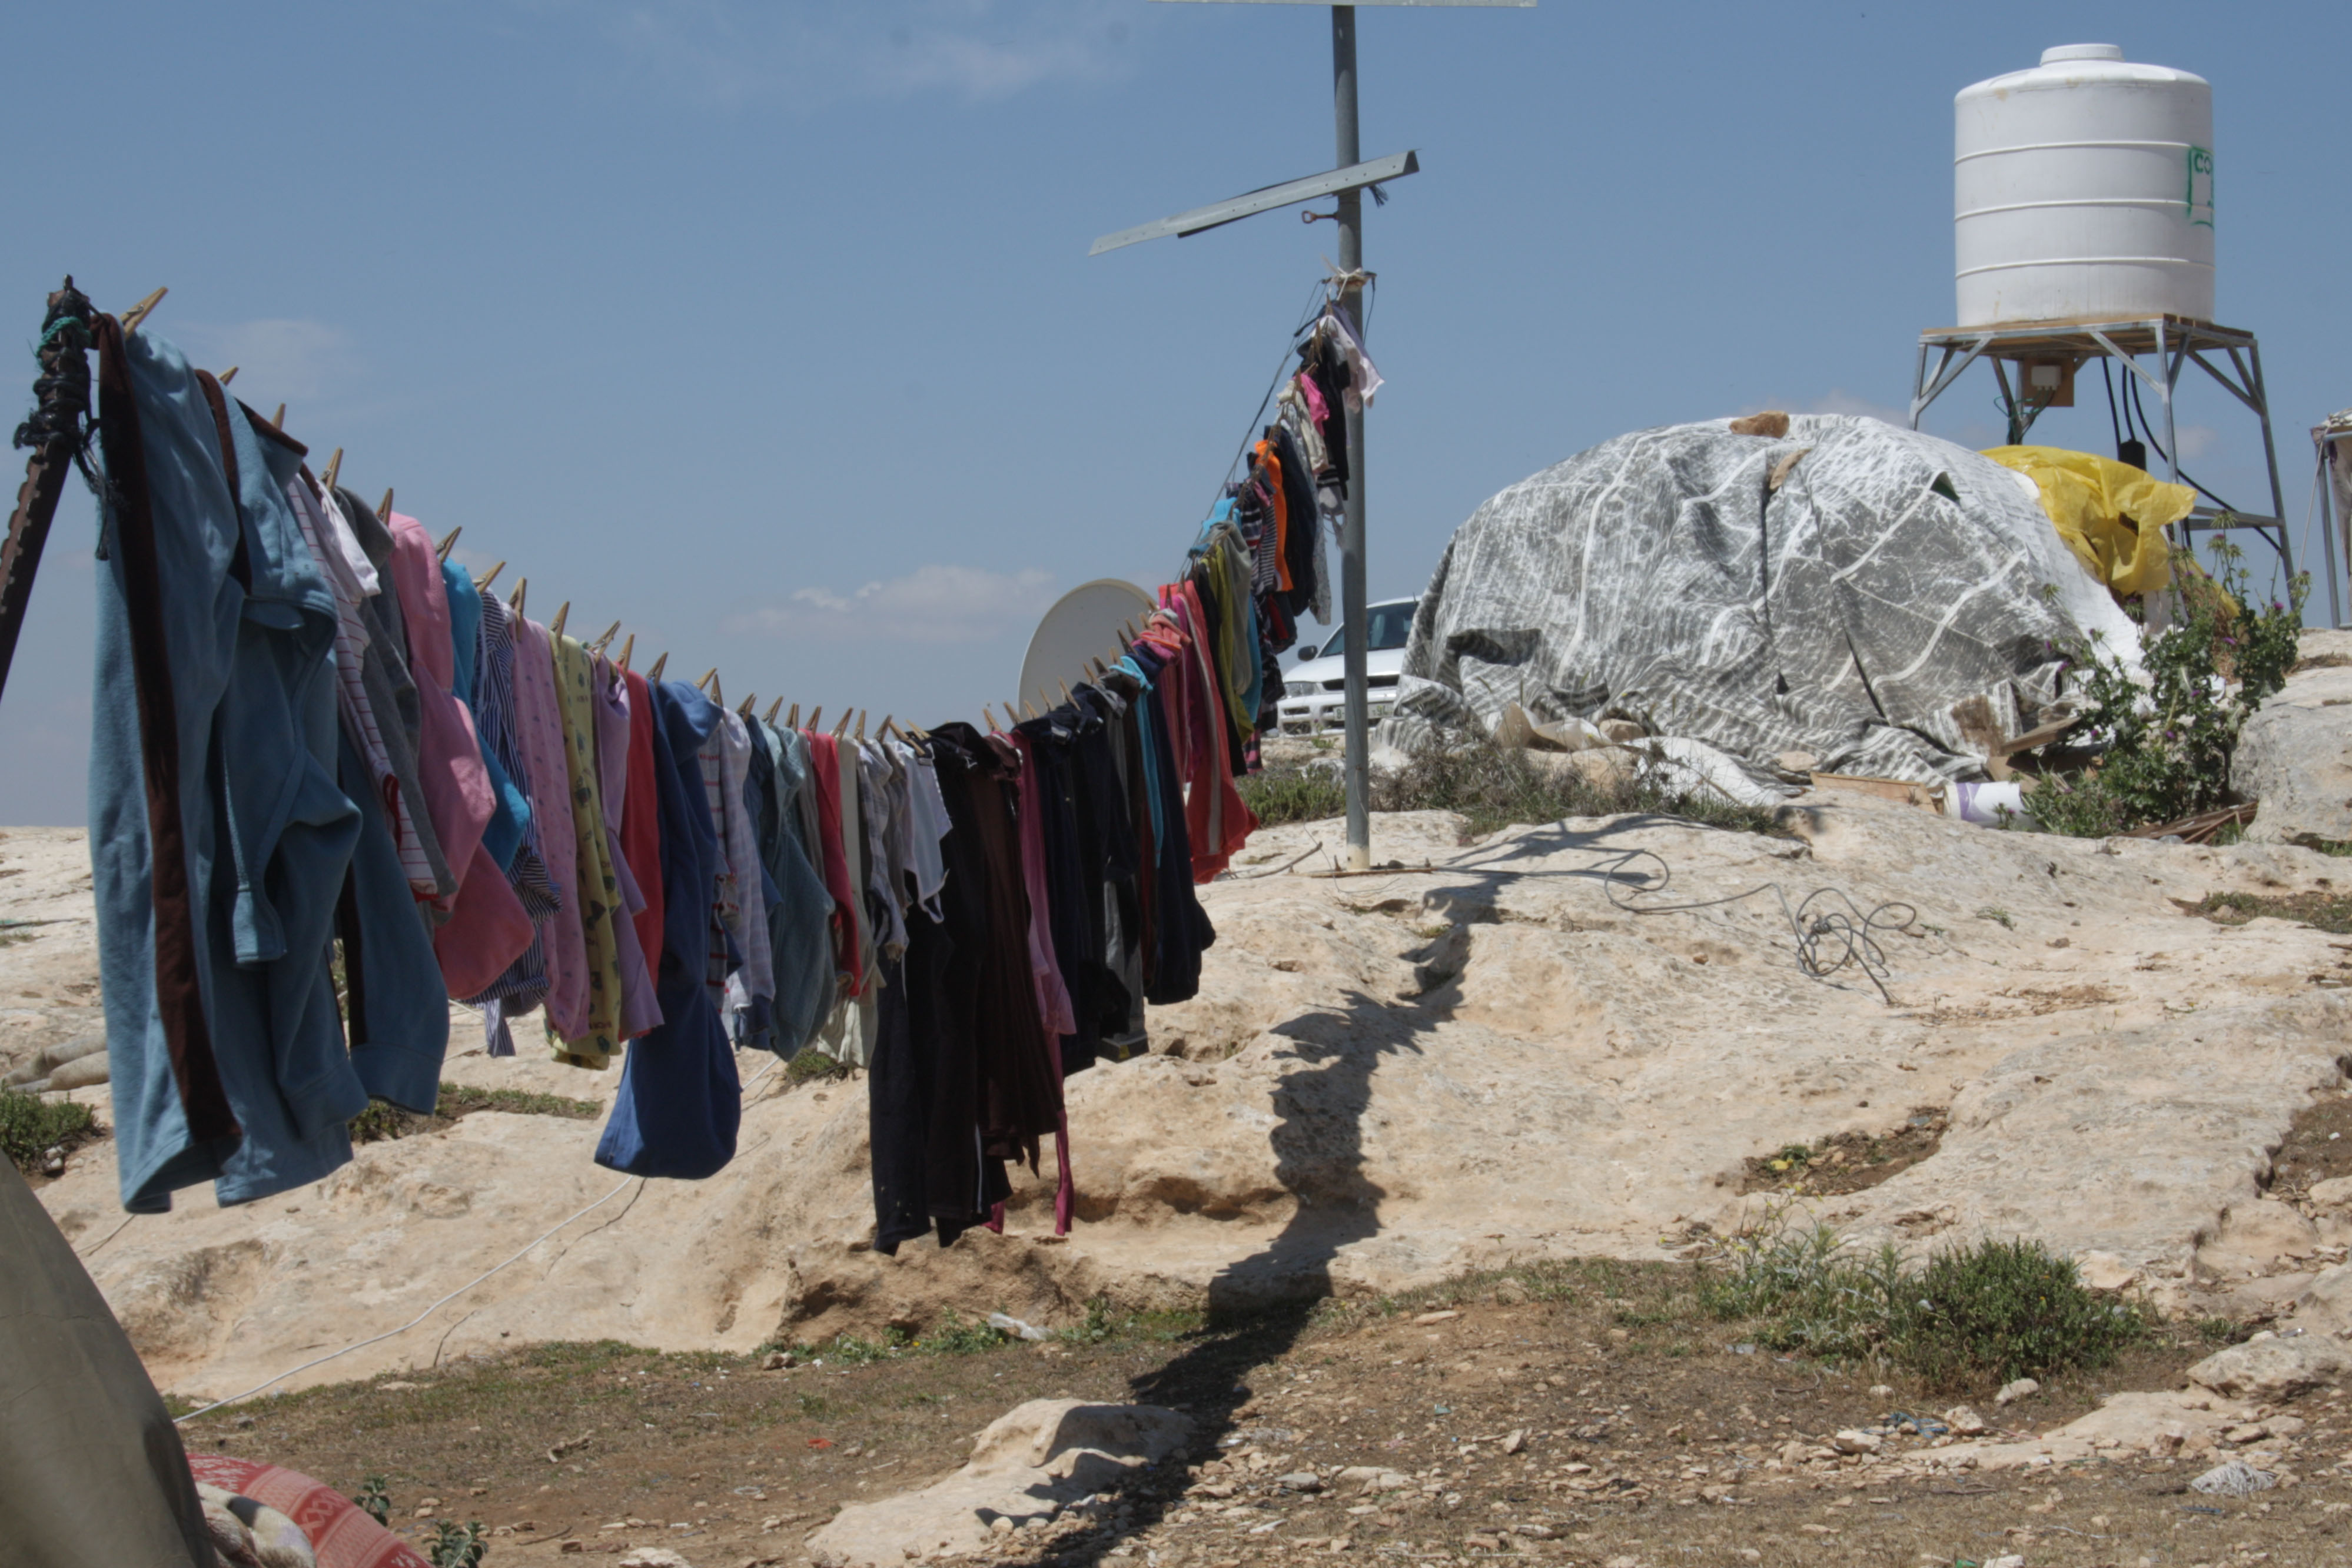 ملابس معلقة في قرية سوسية الفلسطينية. (photo: Ylenia Gostoli)